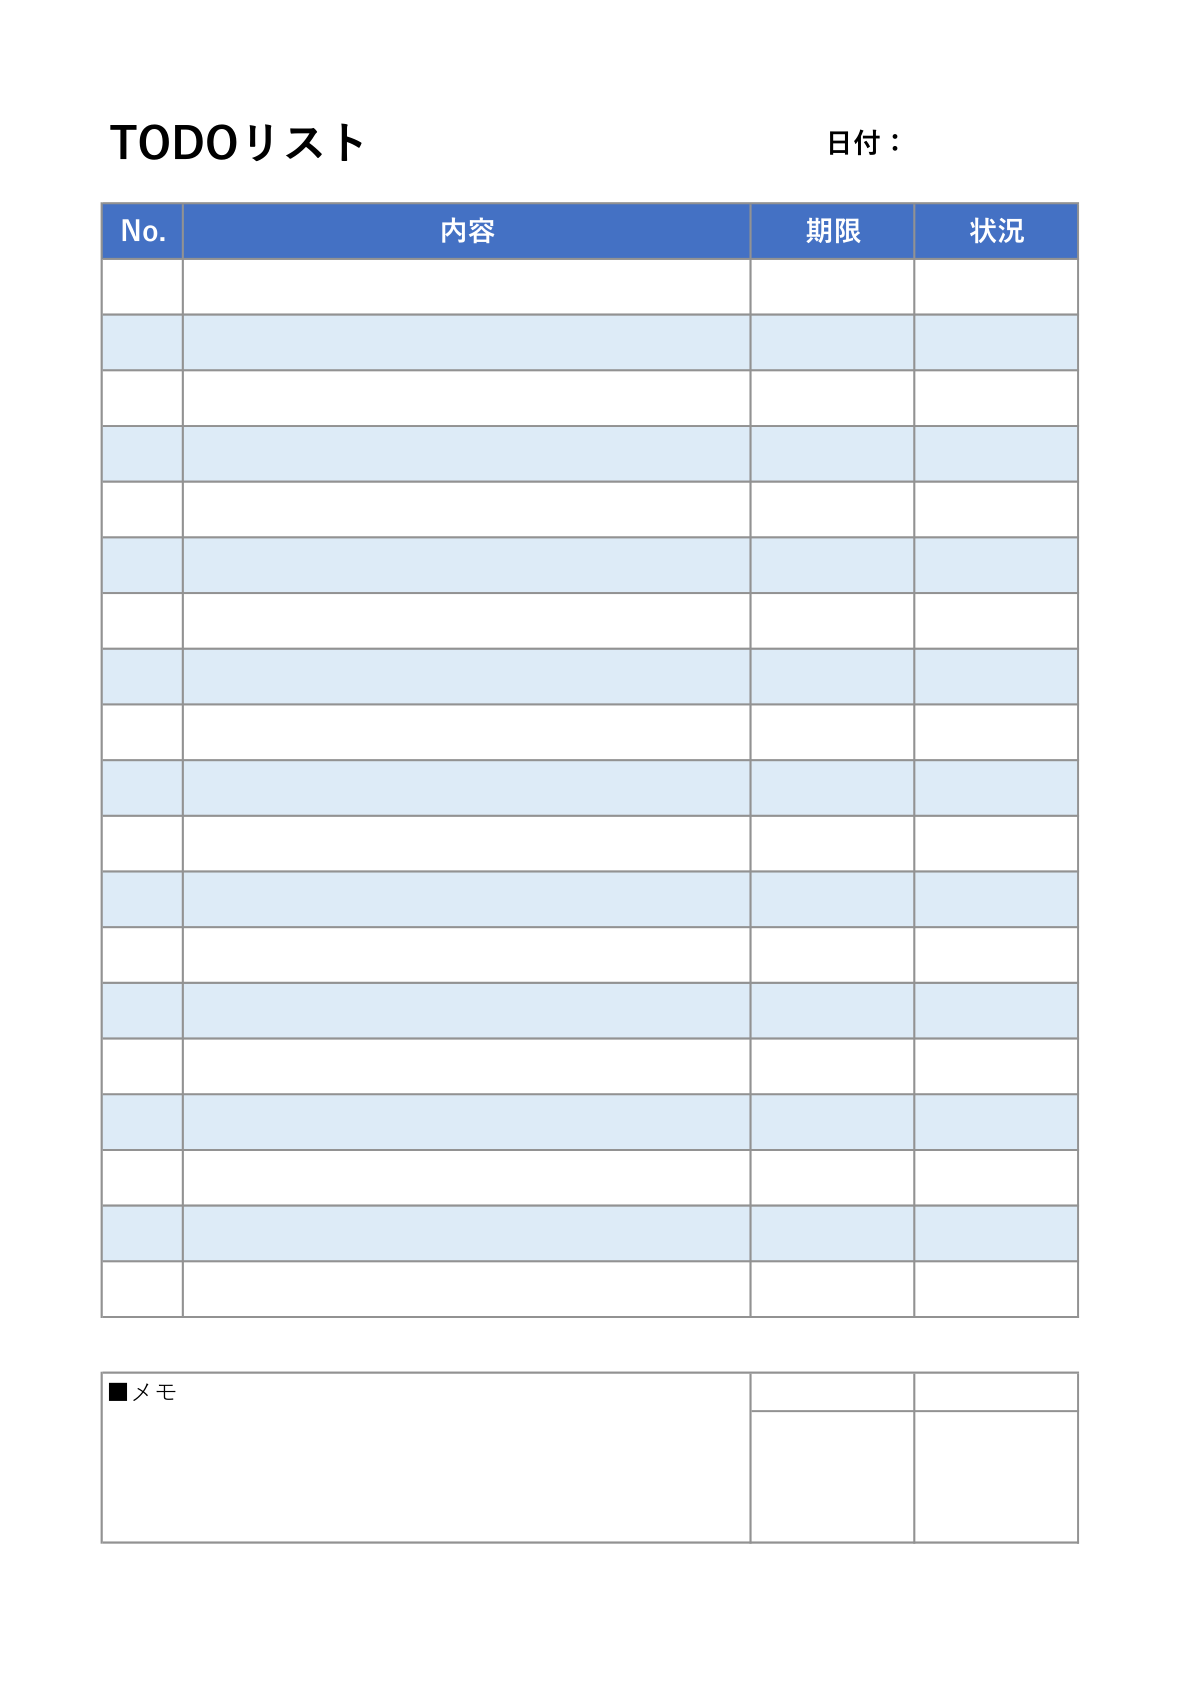 青色のヘッダーを持つTODOリストで、日付欄が追加され、ノート欄と署名欄がページの下部にあり、リストの項目が青色の背景でハイライトされている。